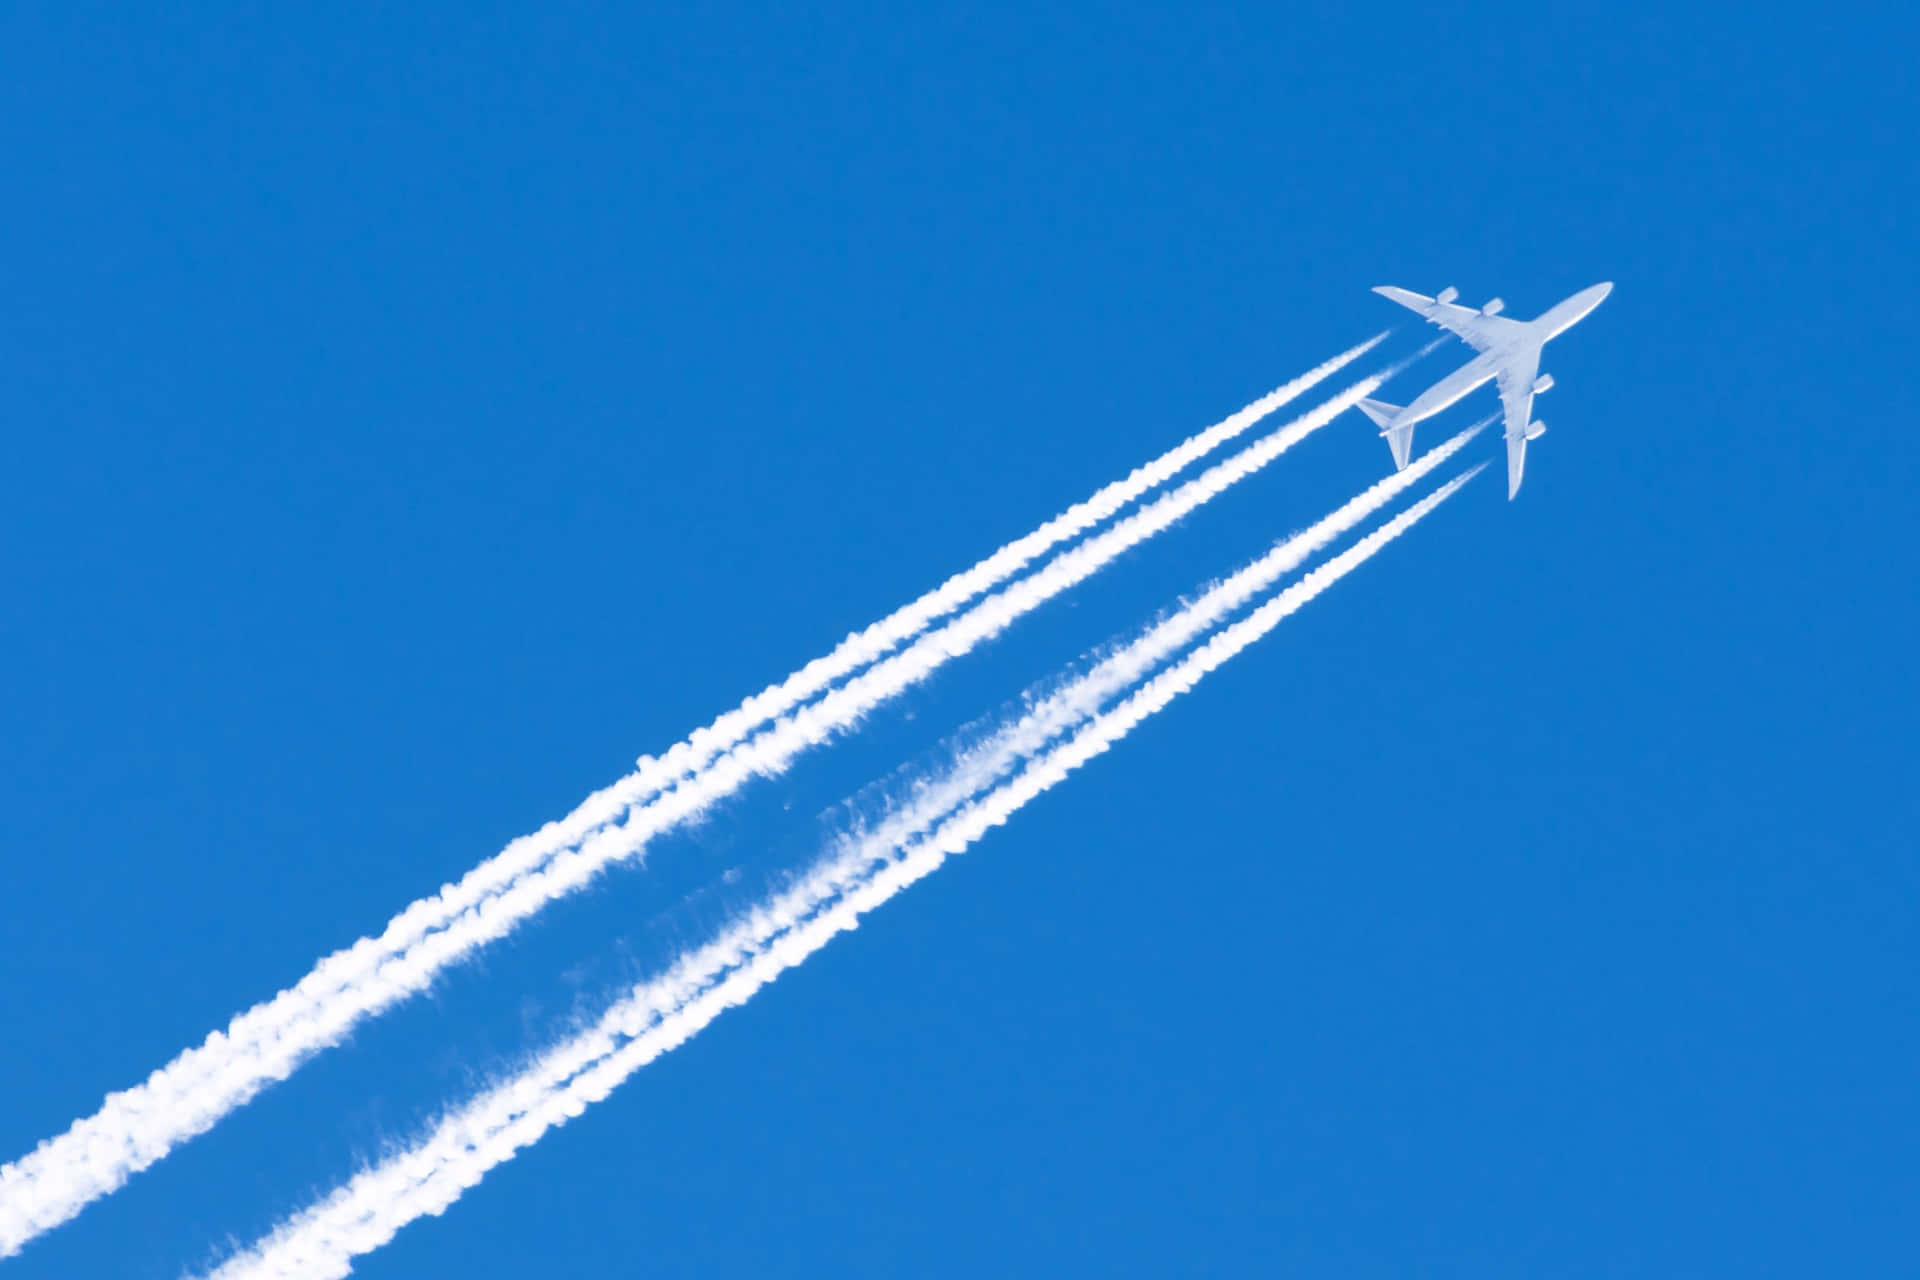 Unairbus A321 Vola Attraverso Un Cielo Blu